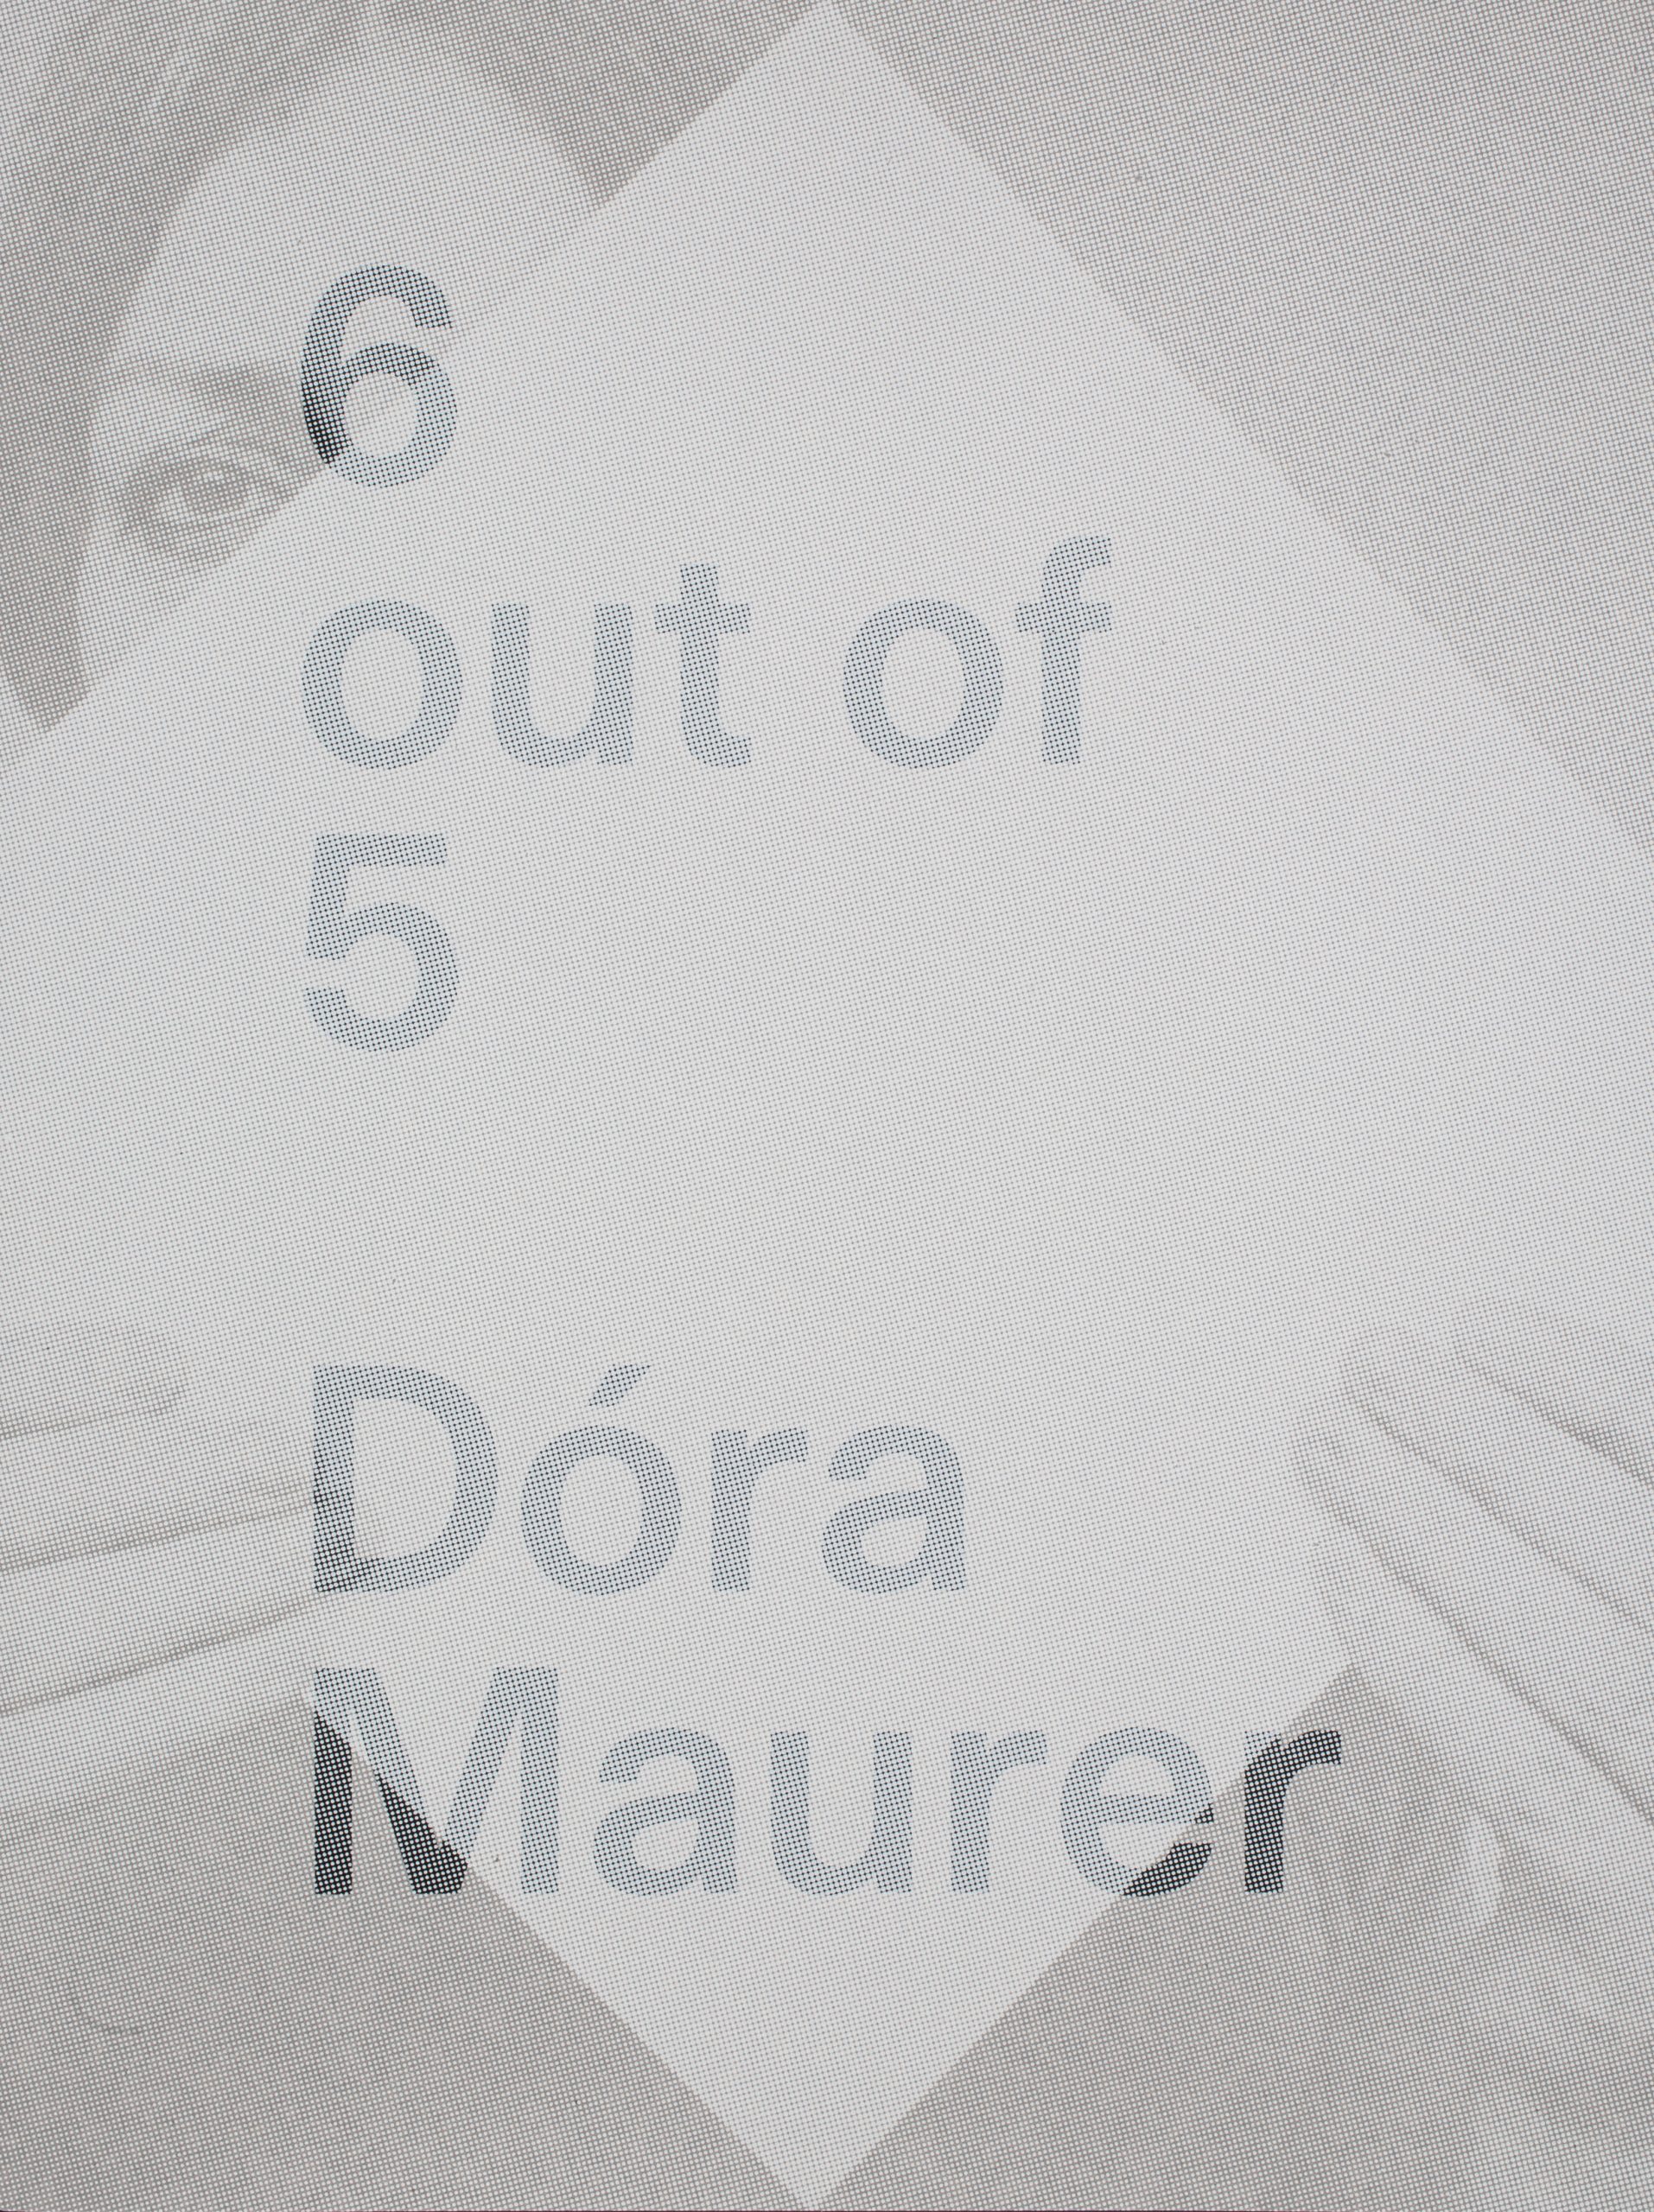 Dóra Maurer: 6 out of 5